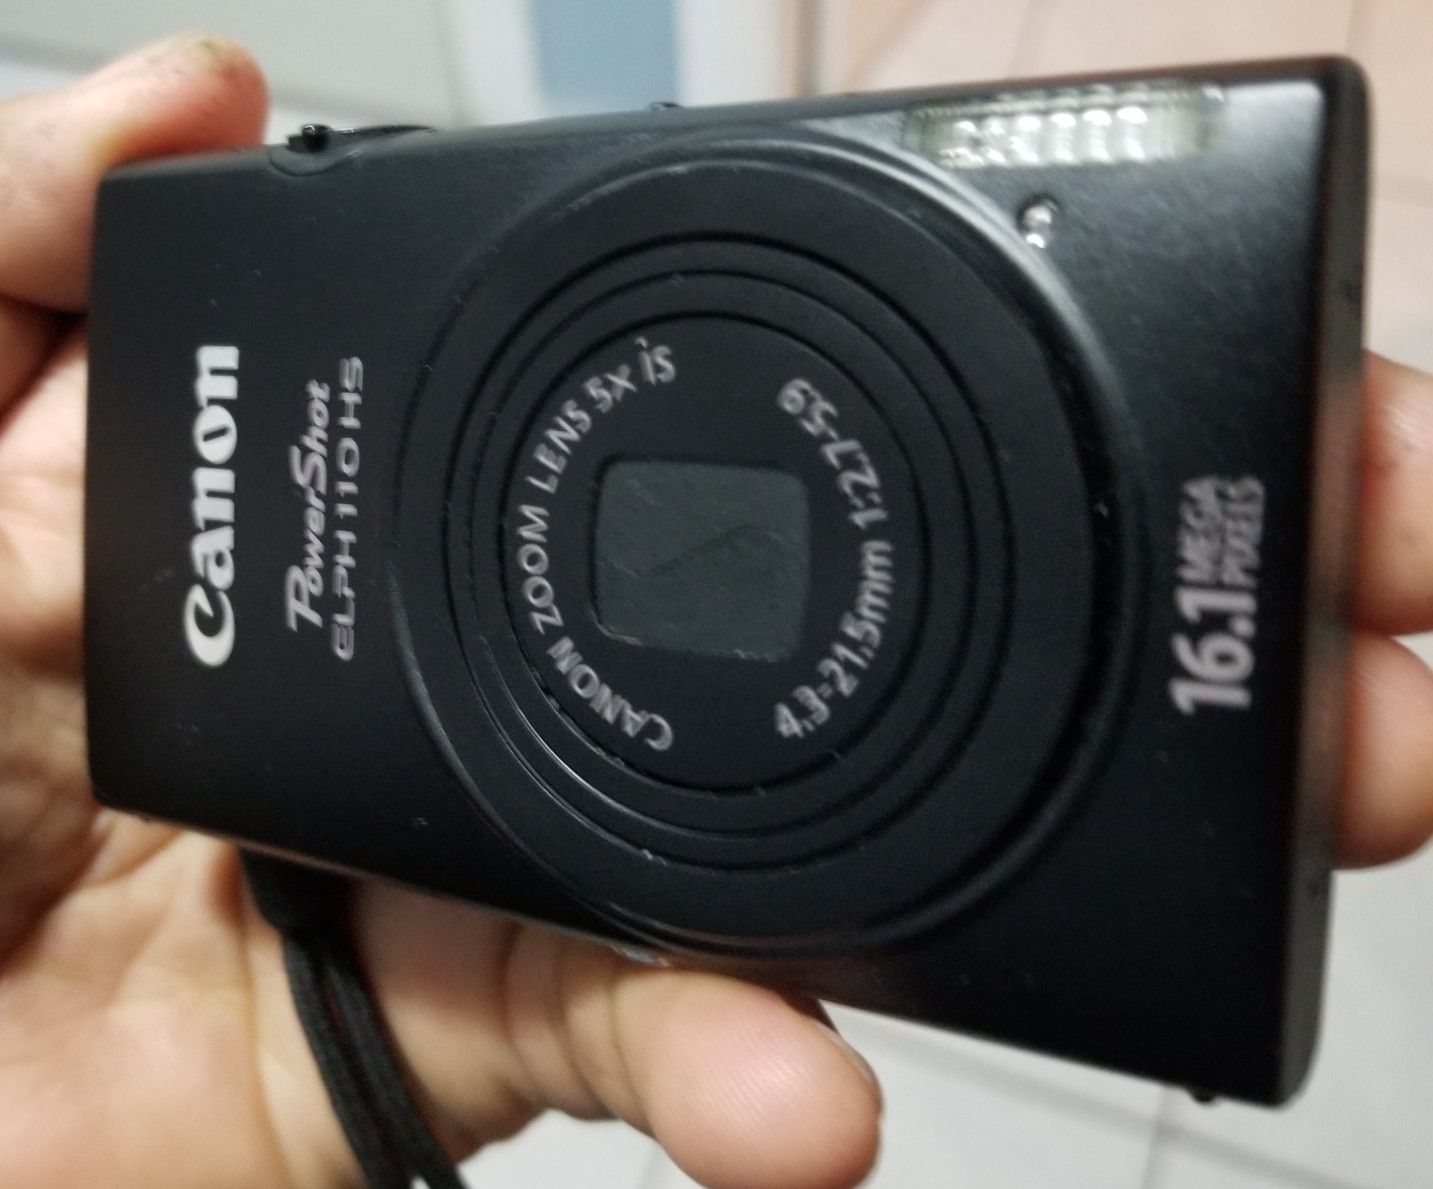 Digital Camera Cannon 16.1 Megapixel